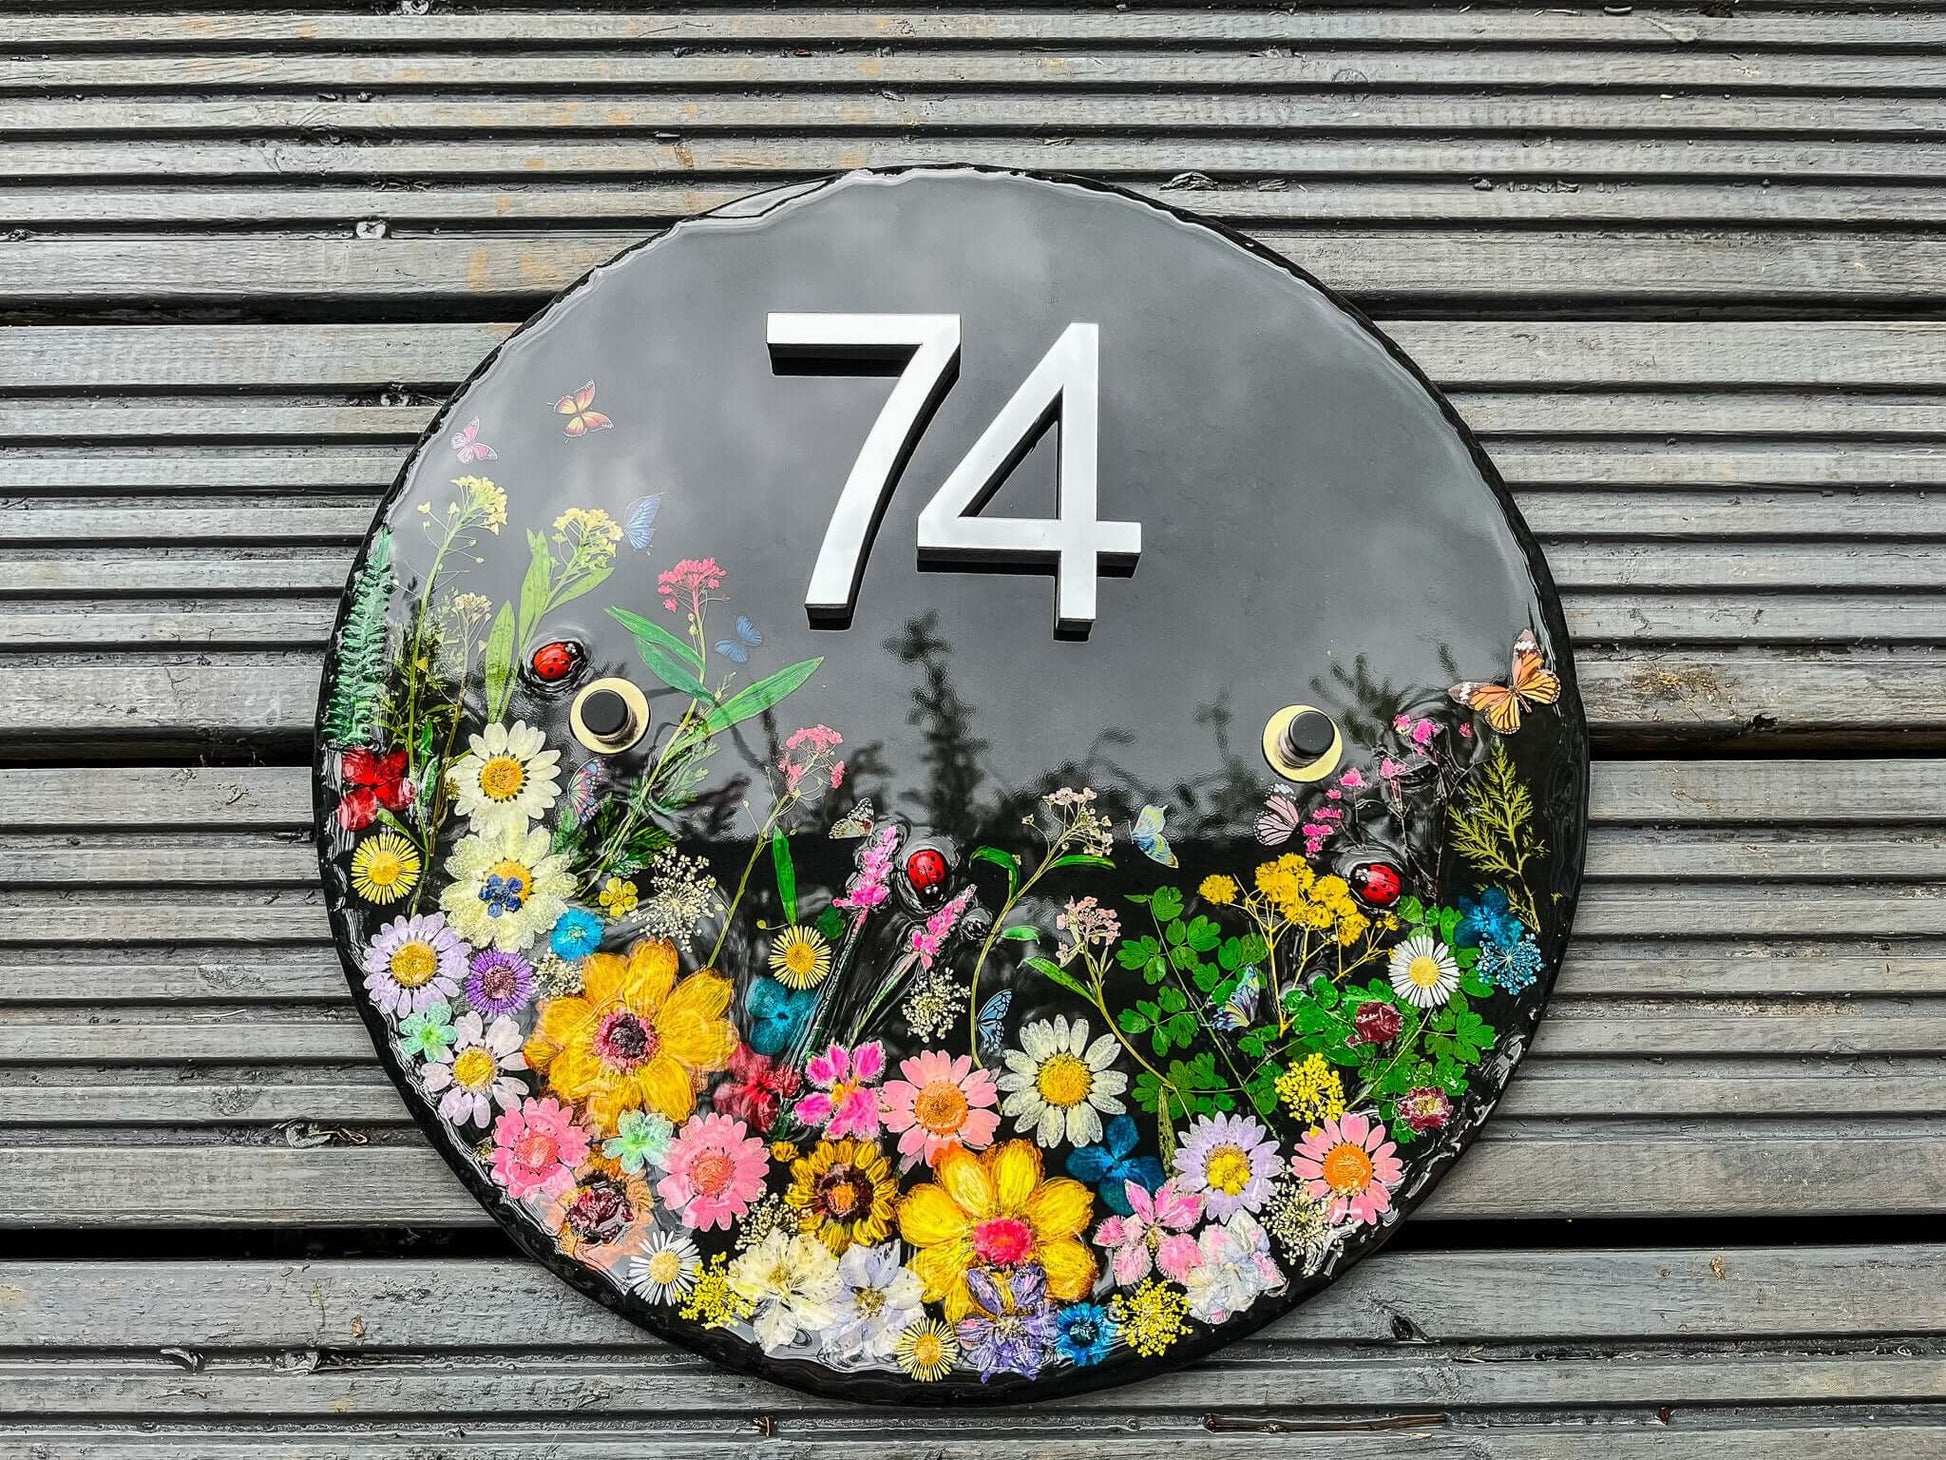 House signs Door Number, Personalised Number Plate, House Number Plaque, Address Plaque, Address Sign, dried flower art, Pressed Flowers Art